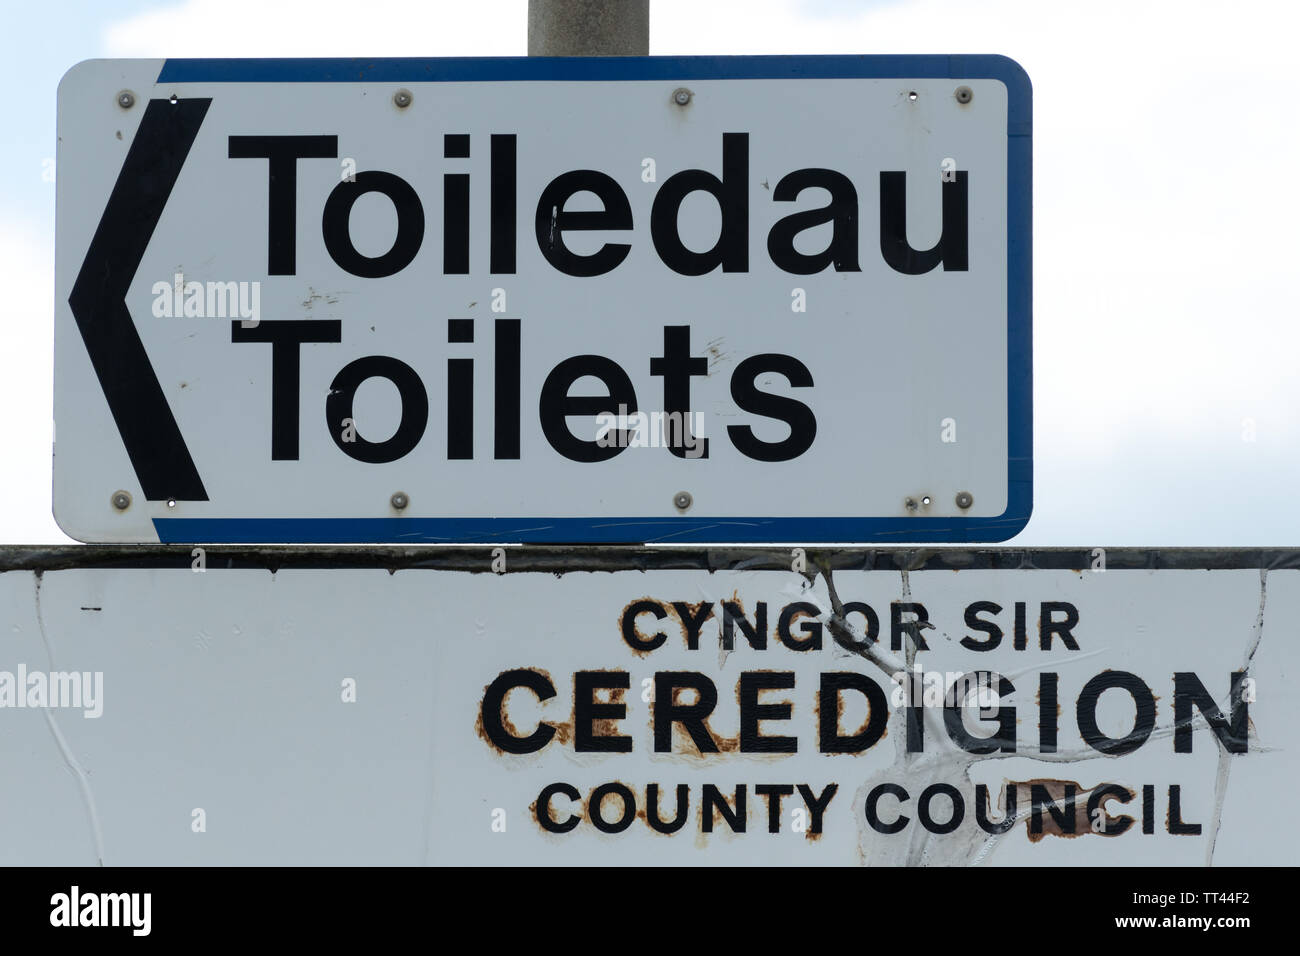 Die walisische Sprache Zeichen für öffentliche Toiletten - toiledau, Ceredigion, Wales Stockfoto